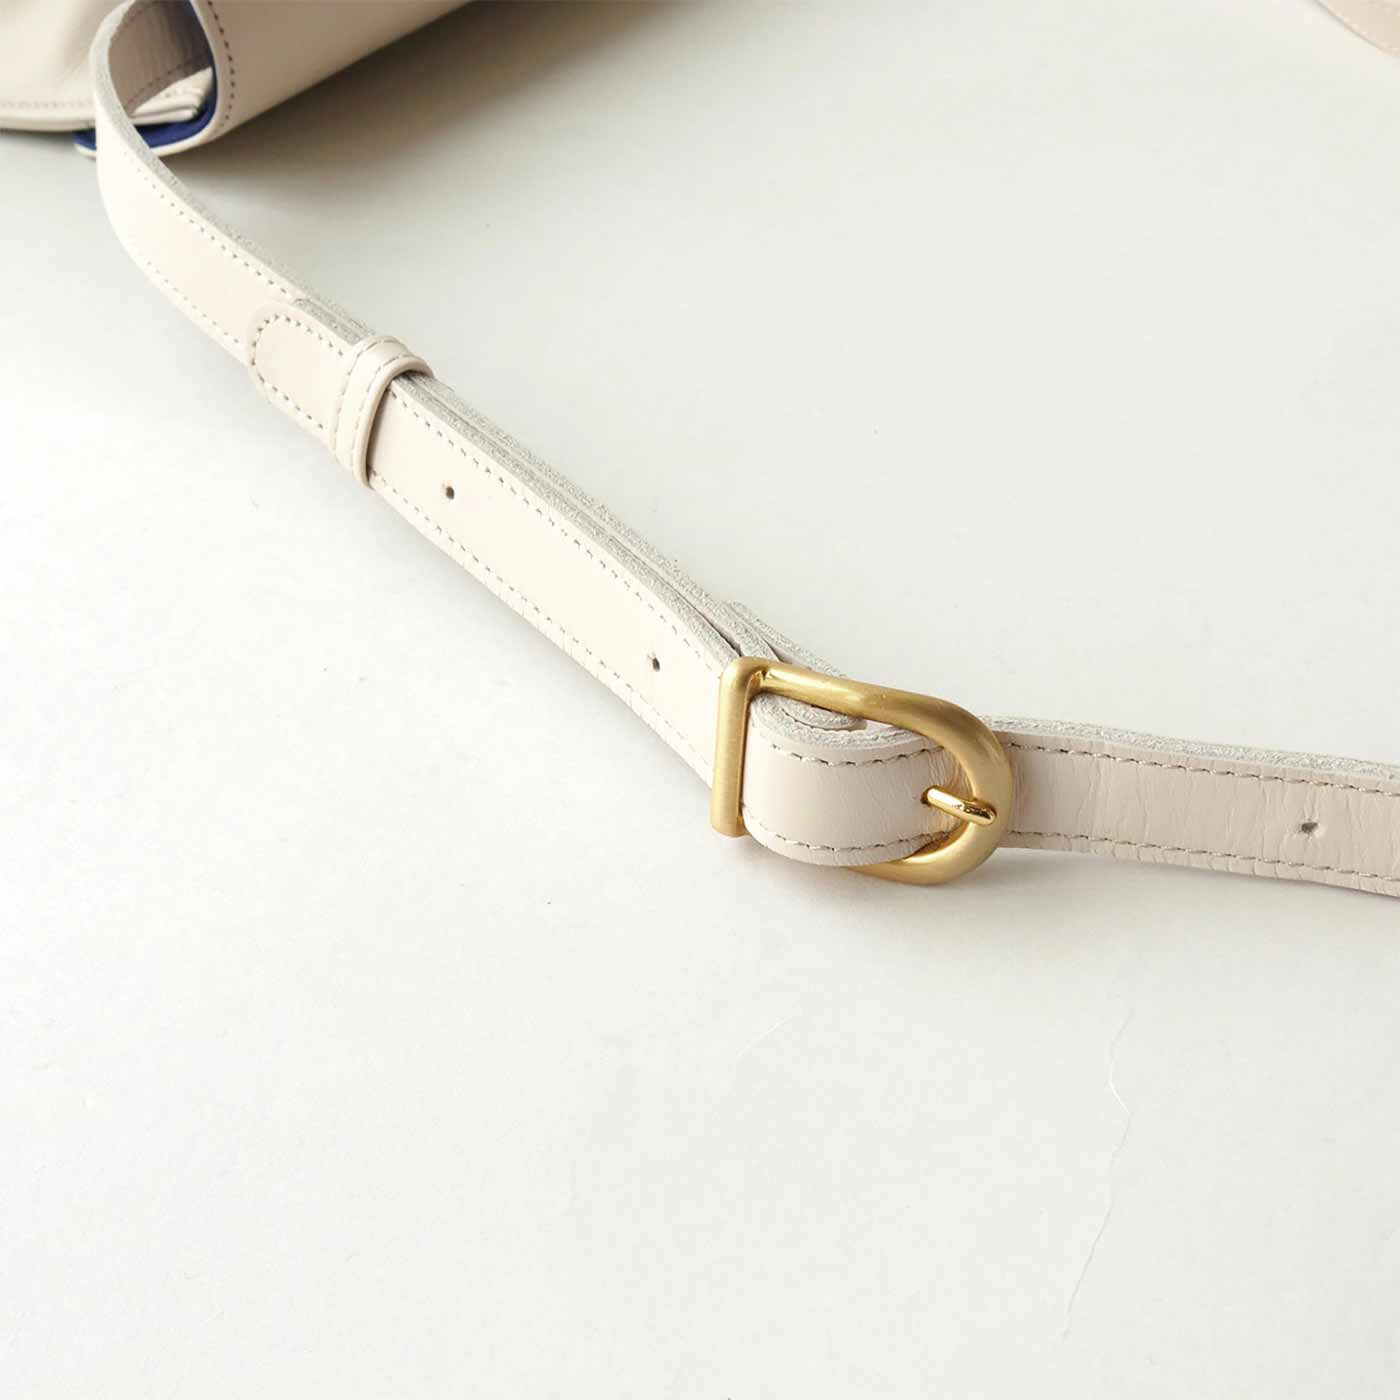 ＆Stories|プランナーMOEとハンドバッグ職人が作った 職人本革のコートバッグ〈ネージュ〉[本革　鞄：日本製]|白色の革とゴールド色の金具の組み合わせがノーブルな印象。